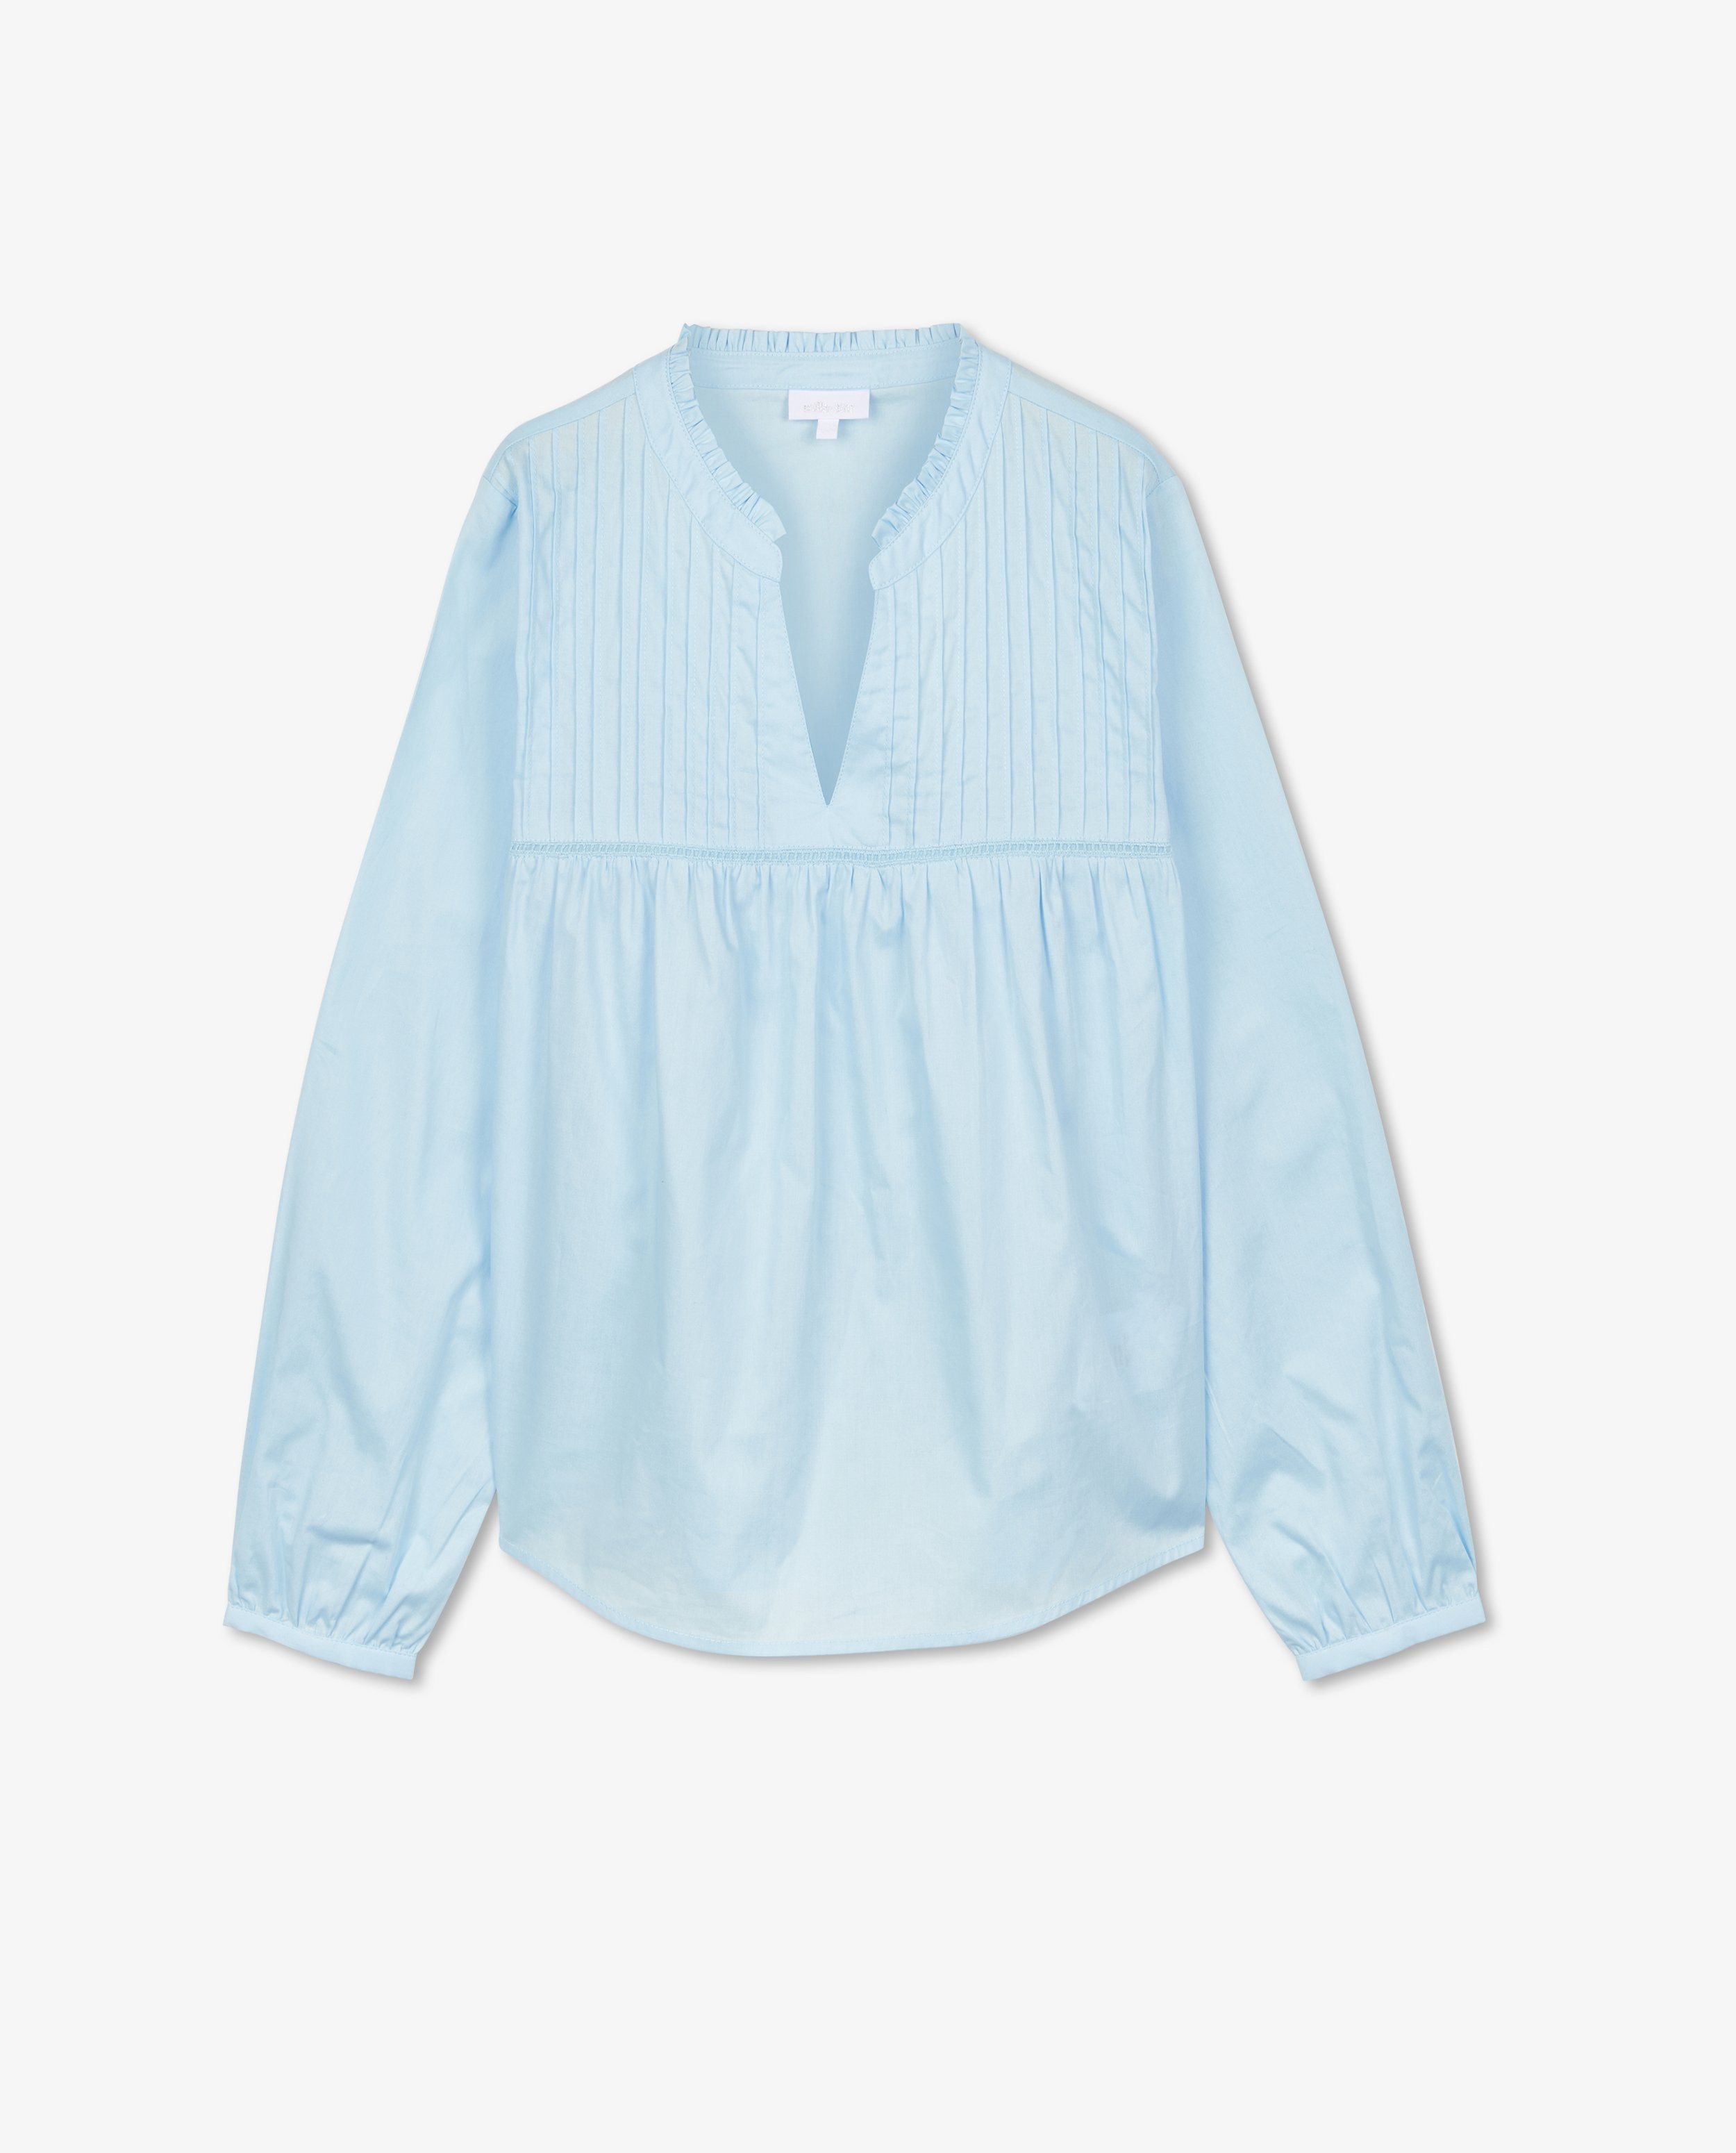 Hemden - Katoenen blouse, Communie